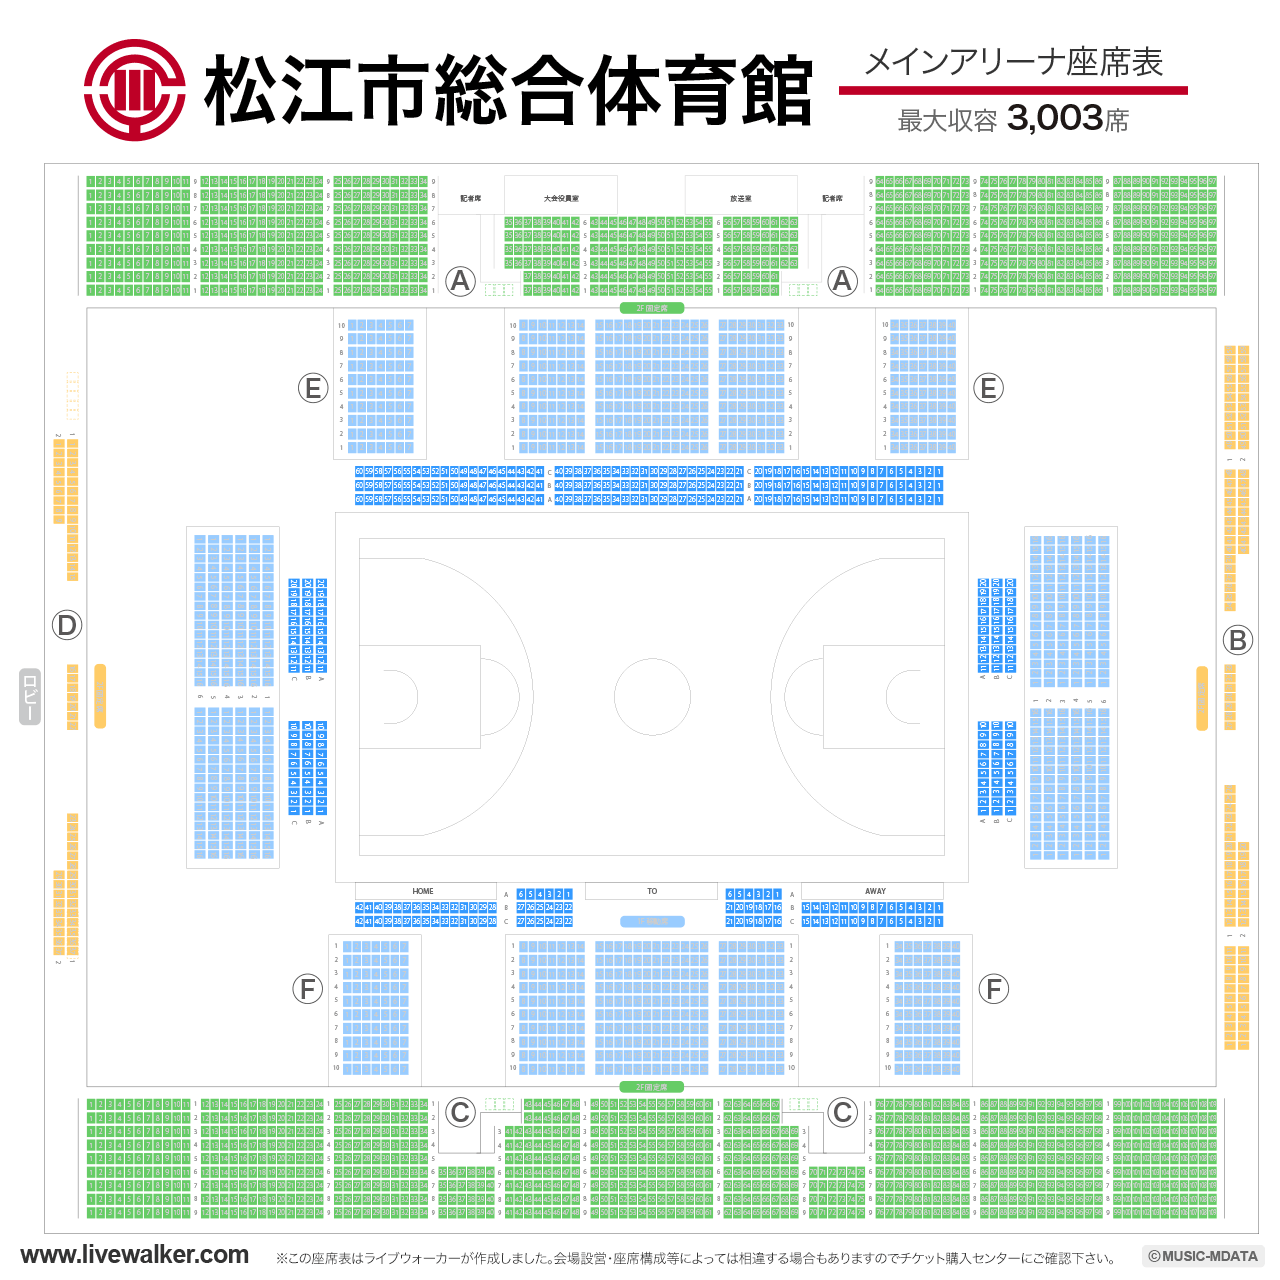 松江市総合体育館メインアリーナの座席表